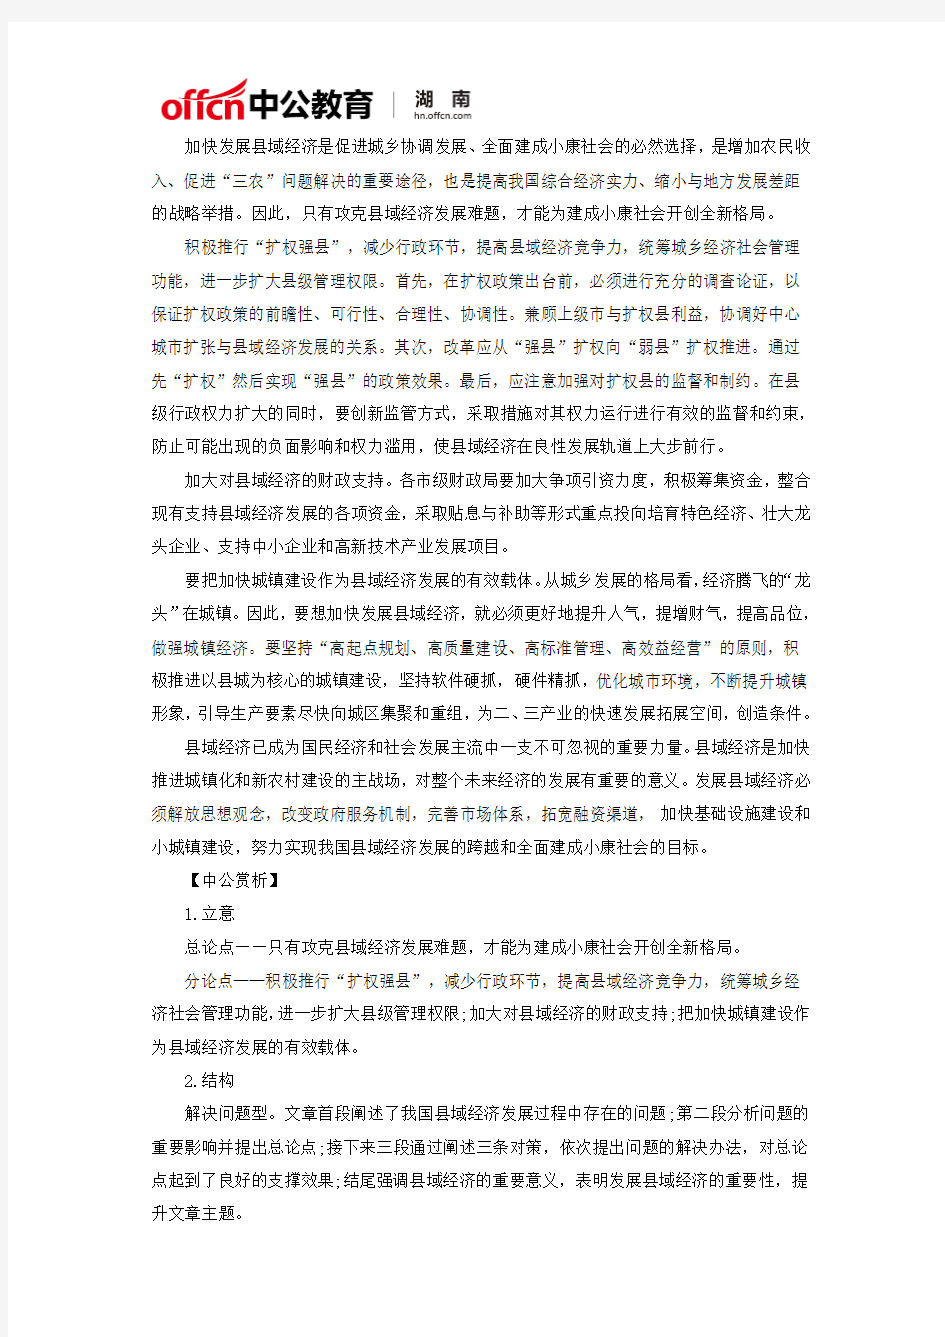 2017年湖南省公务员考试省考缴费时间